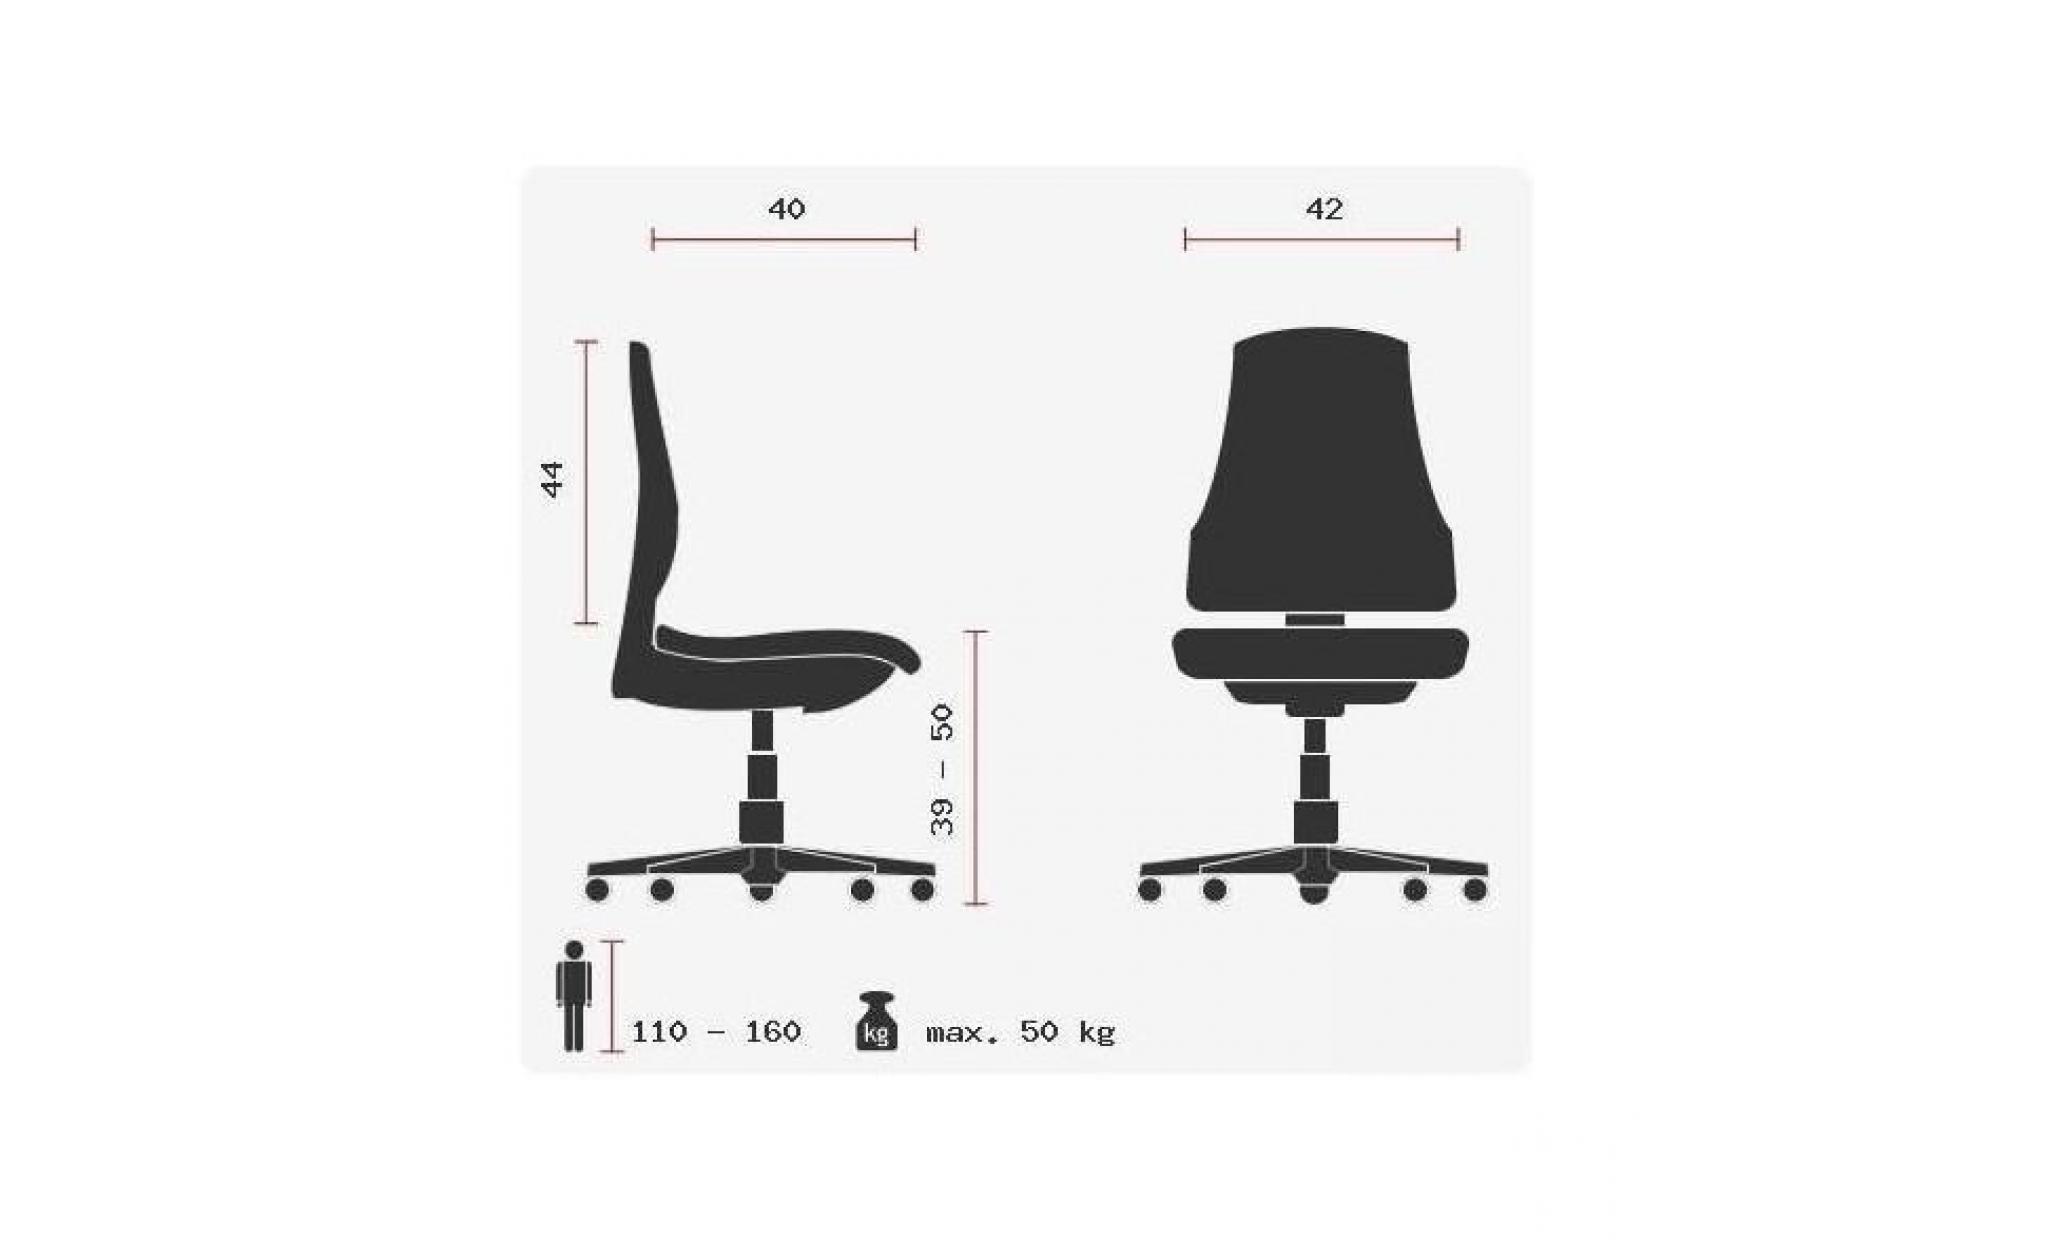 dossier ergonomique +++ assise réglable en hauteur +++ tissu coton, anti abrasif et anti tâche pas cher